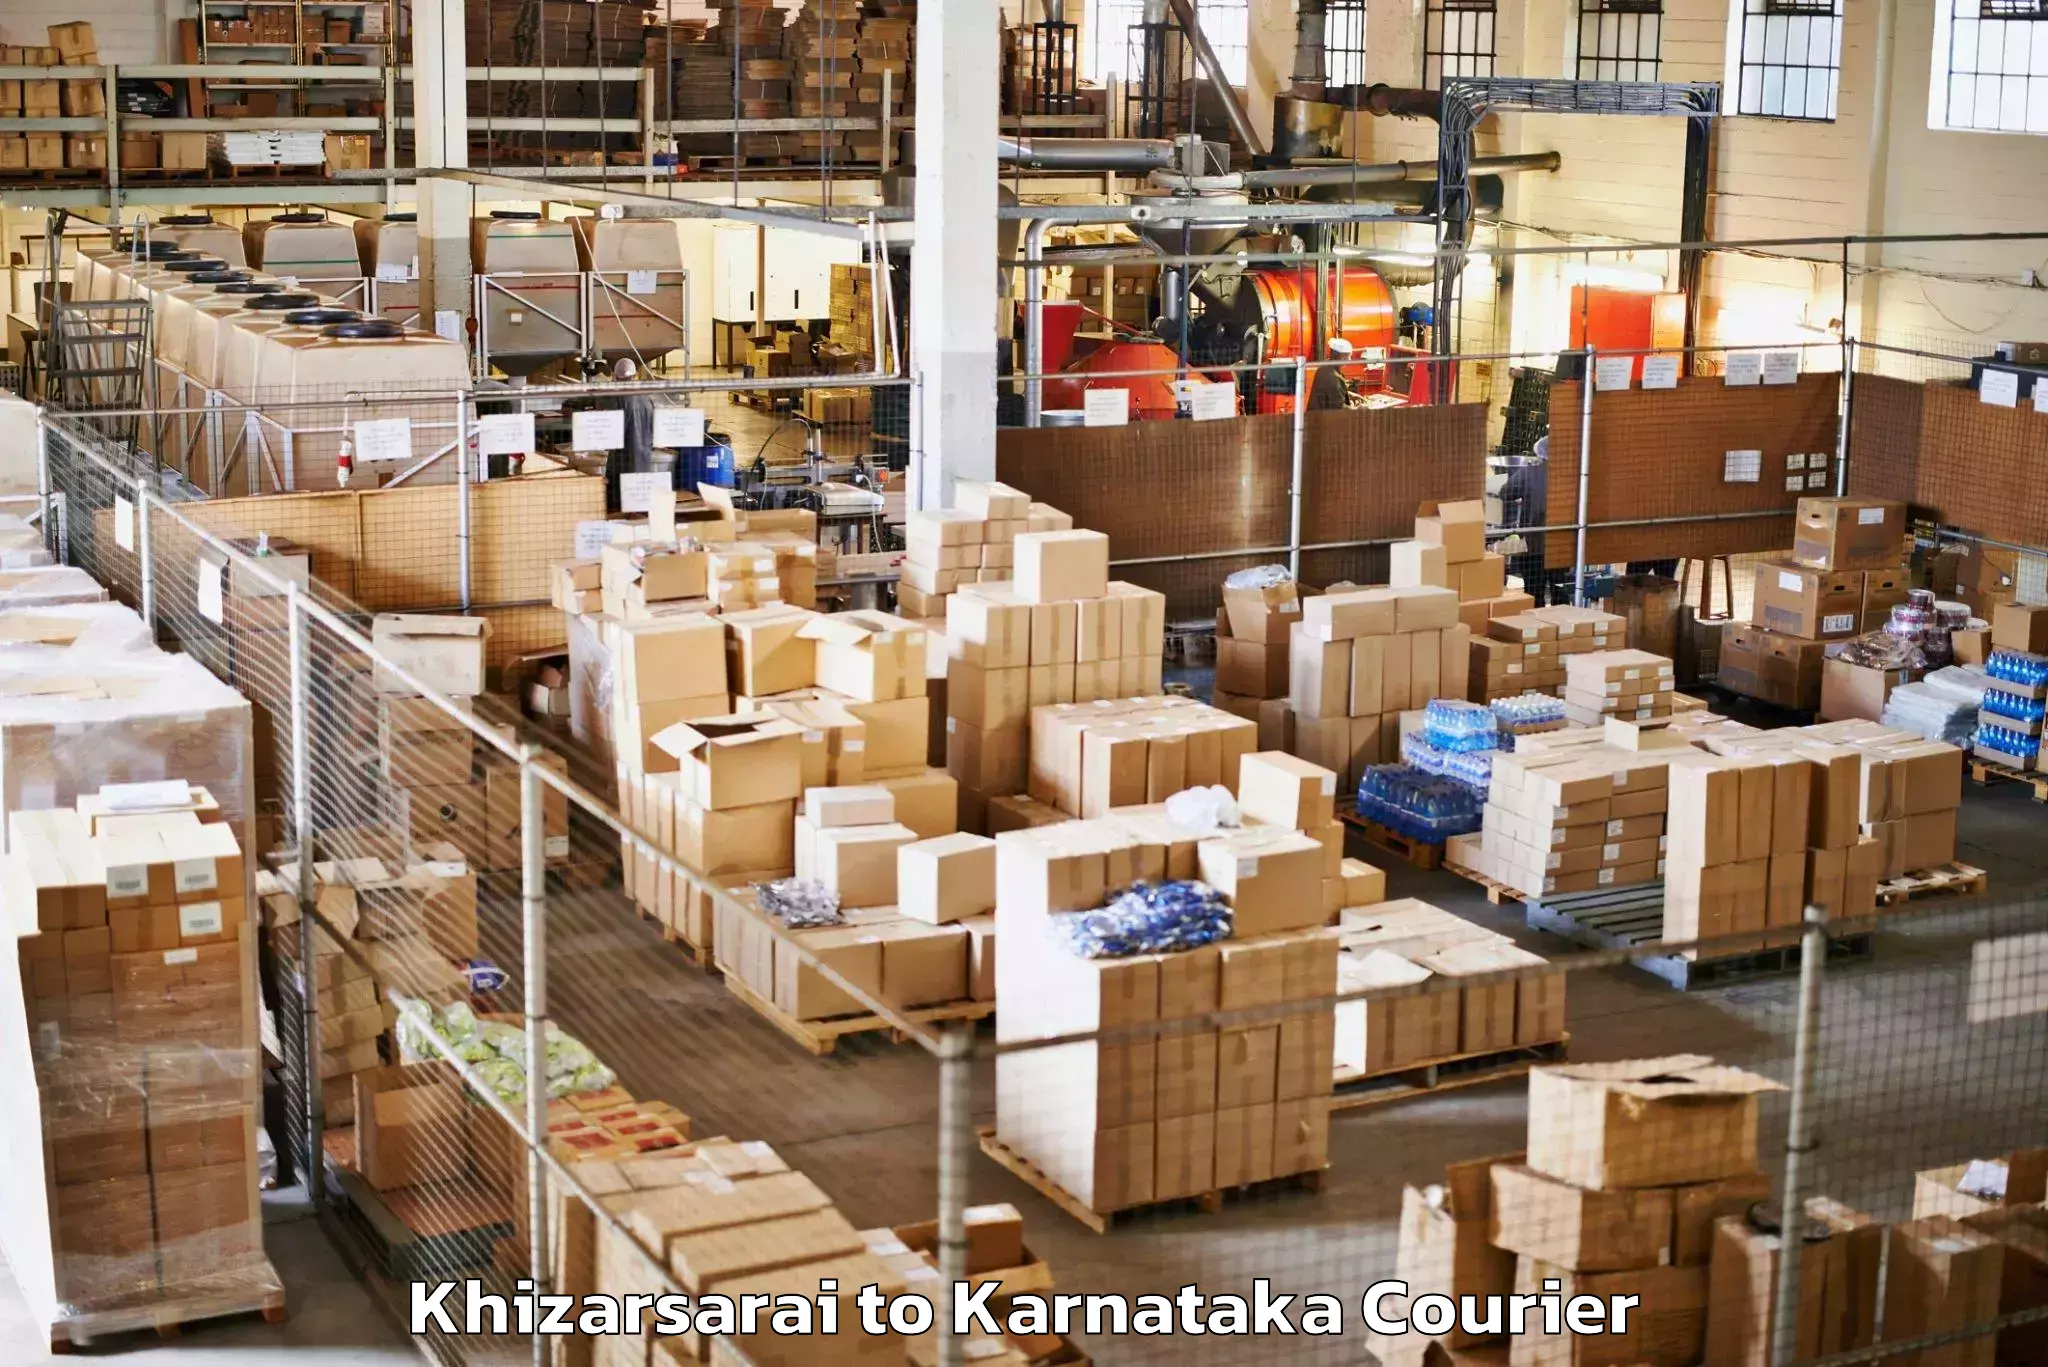 Baggage shipping service Khizarsarai to Indi